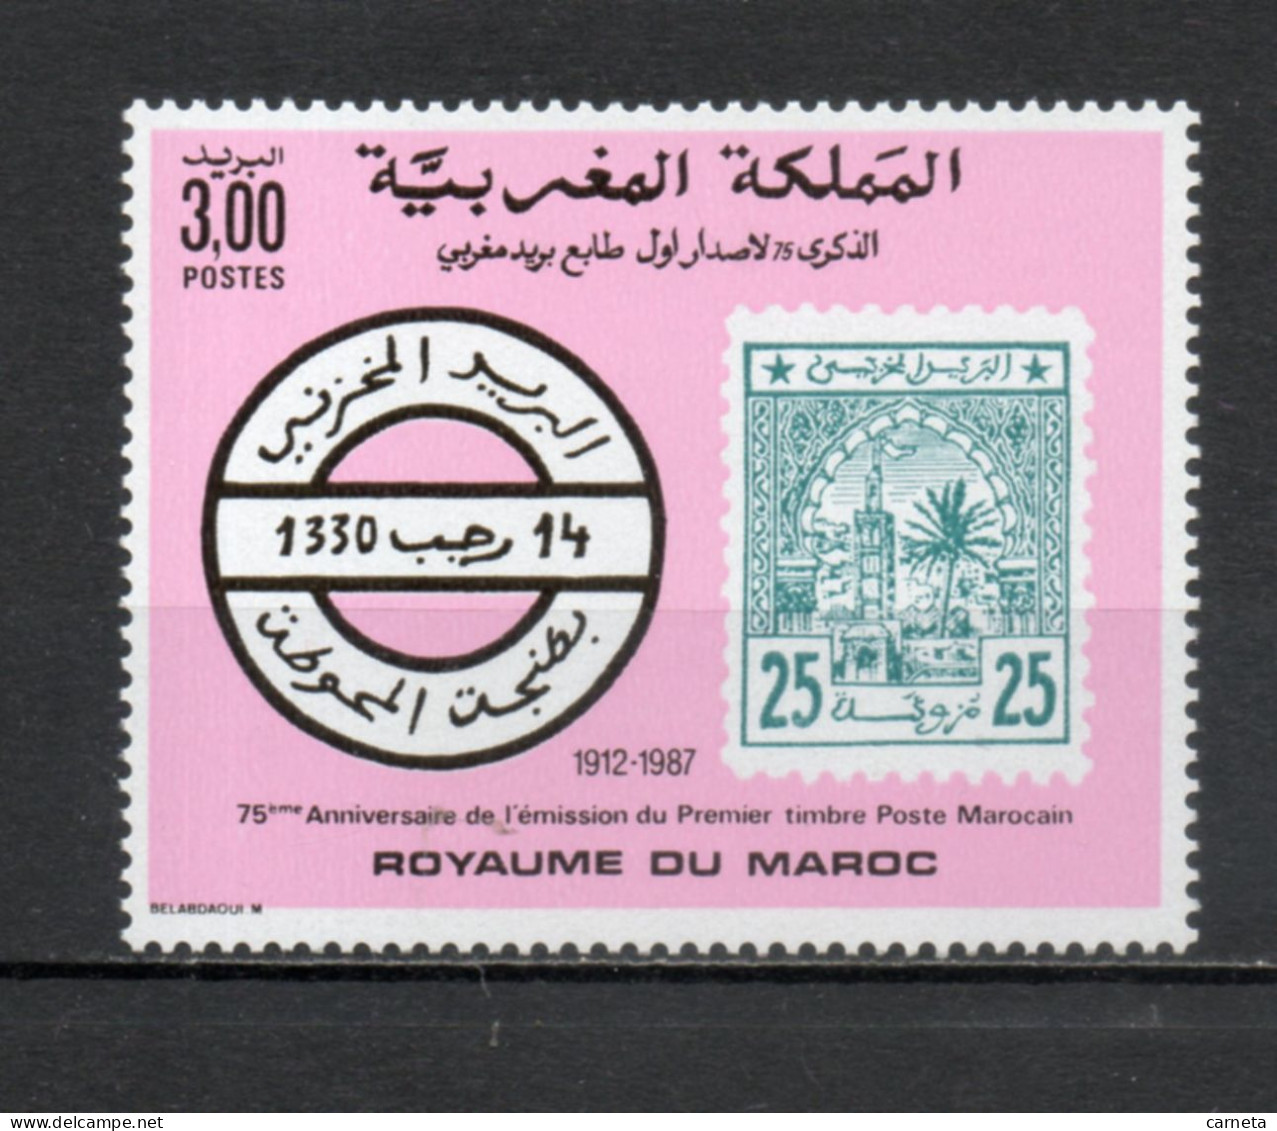 MAROC N°  1045   NEUF SANS CHARNIERE  COTE 1.50€    TIMBRE SUR TIMBRE - Marokko (1956-...)